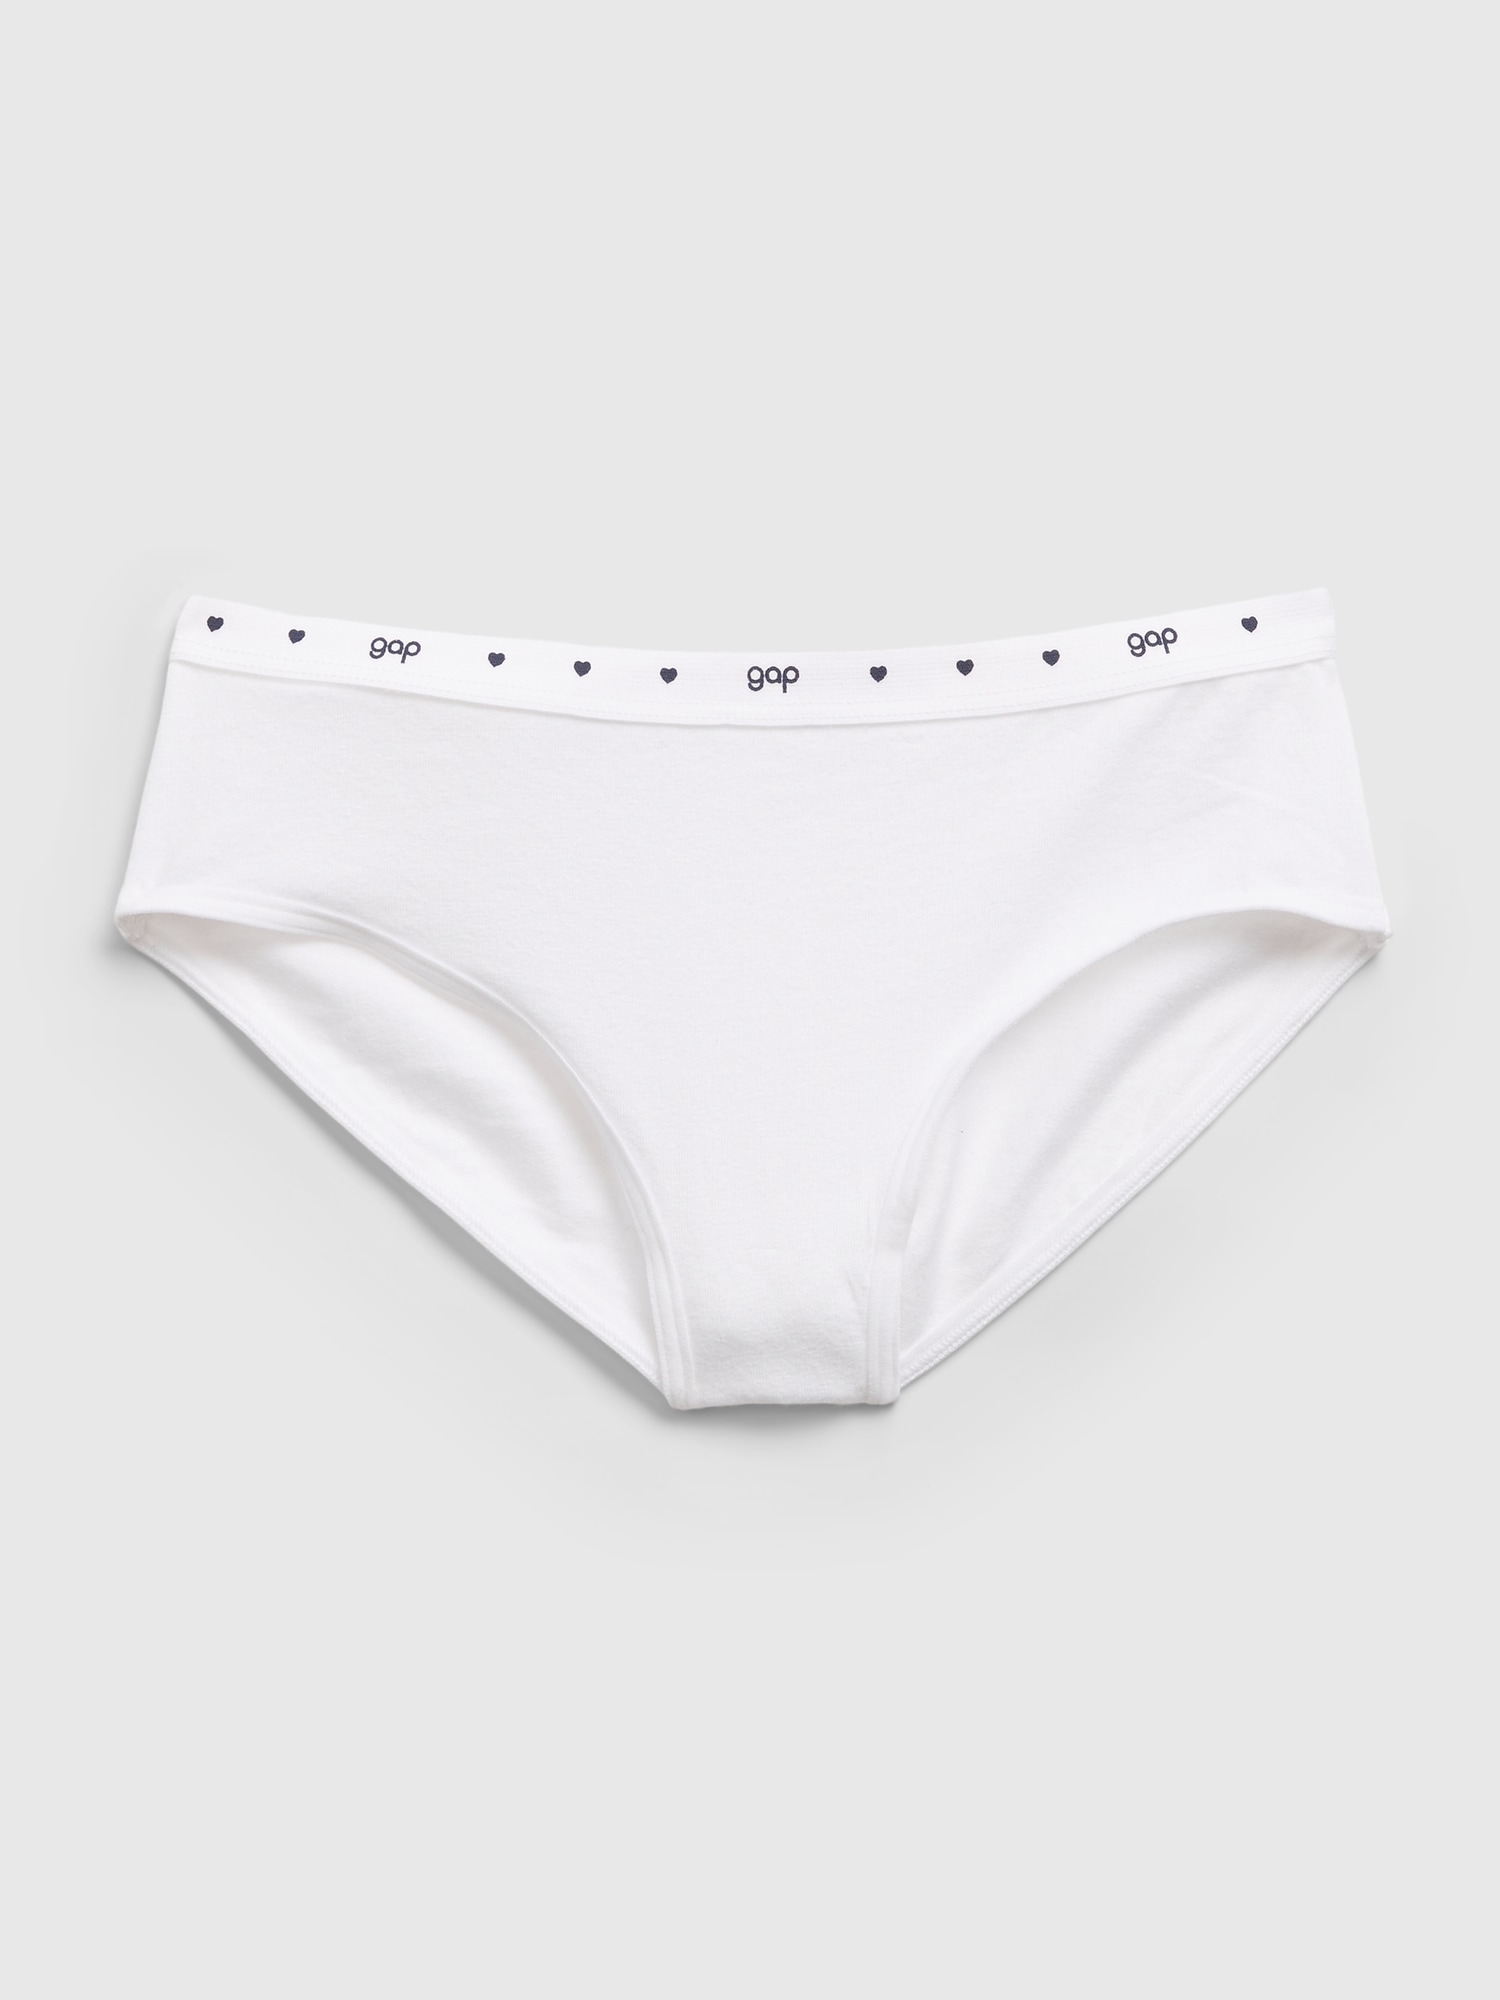 Bonds Girls Underwear Briefs Shorties White Everyday Kids Undies